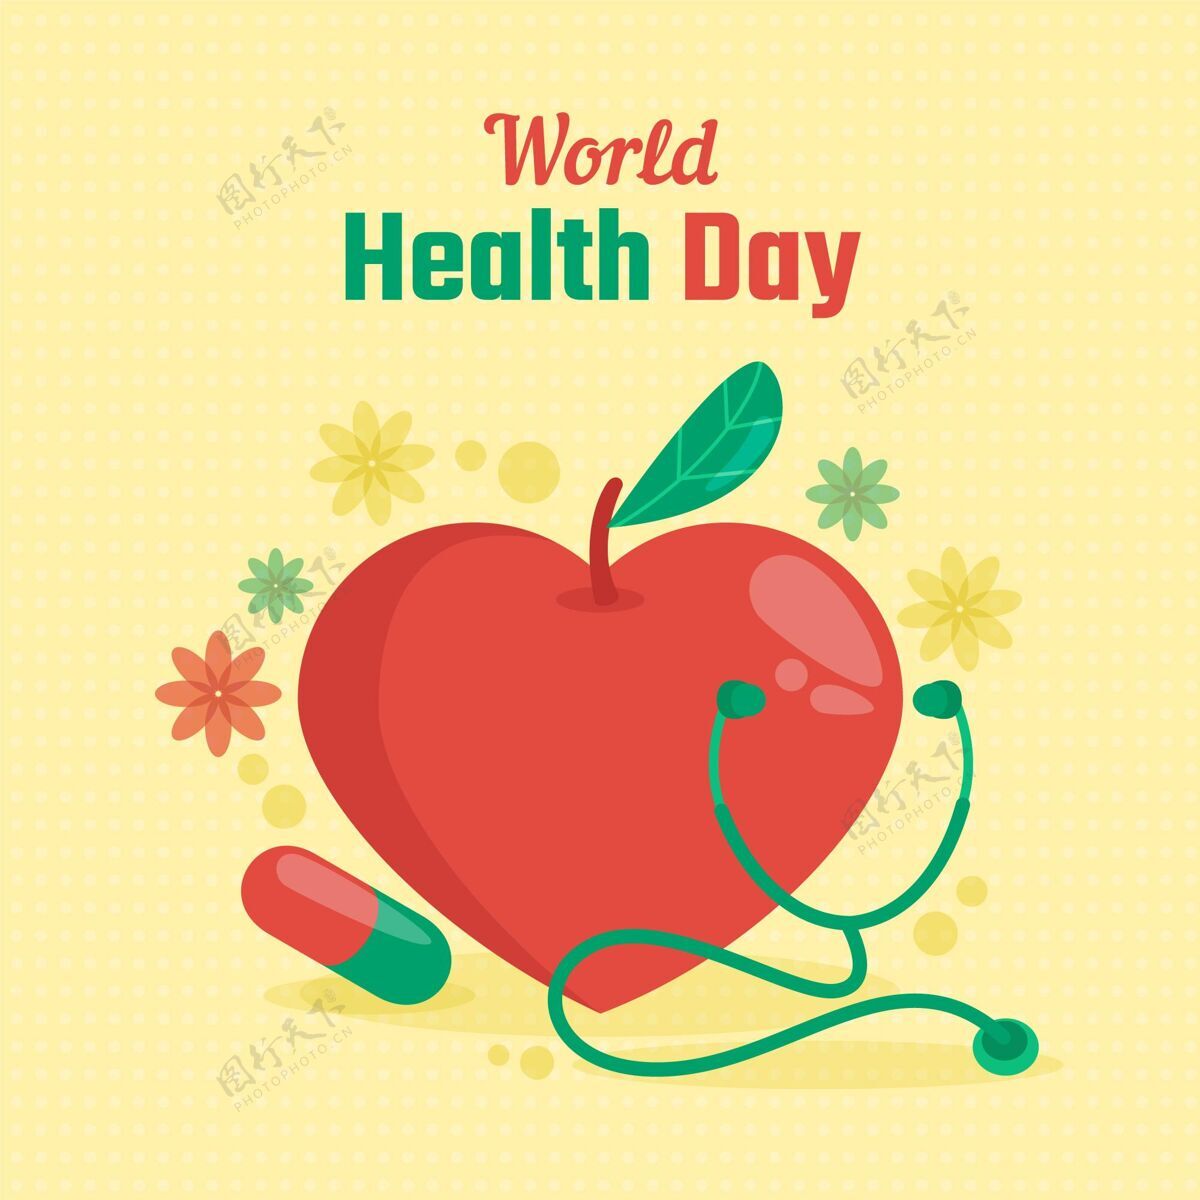 世界卫生日世界卫生日插图医学健康医疗保健